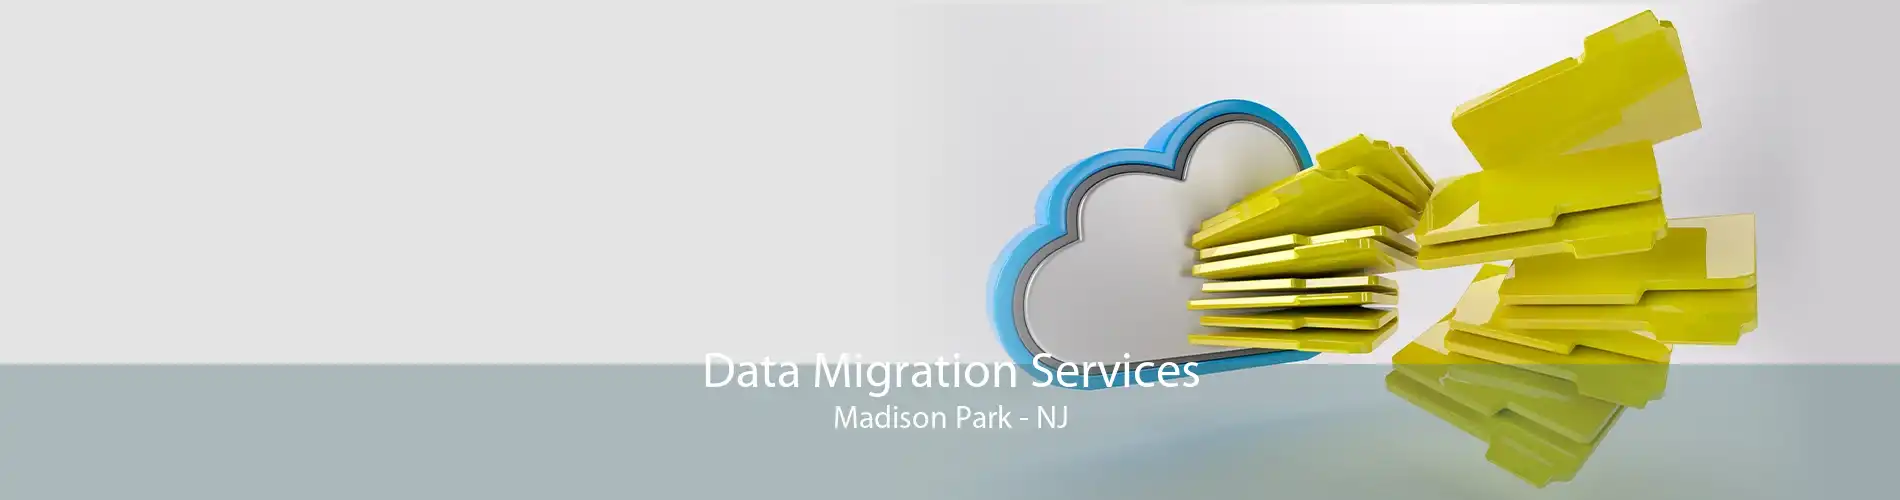 Data Migration Services Madison Park - NJ